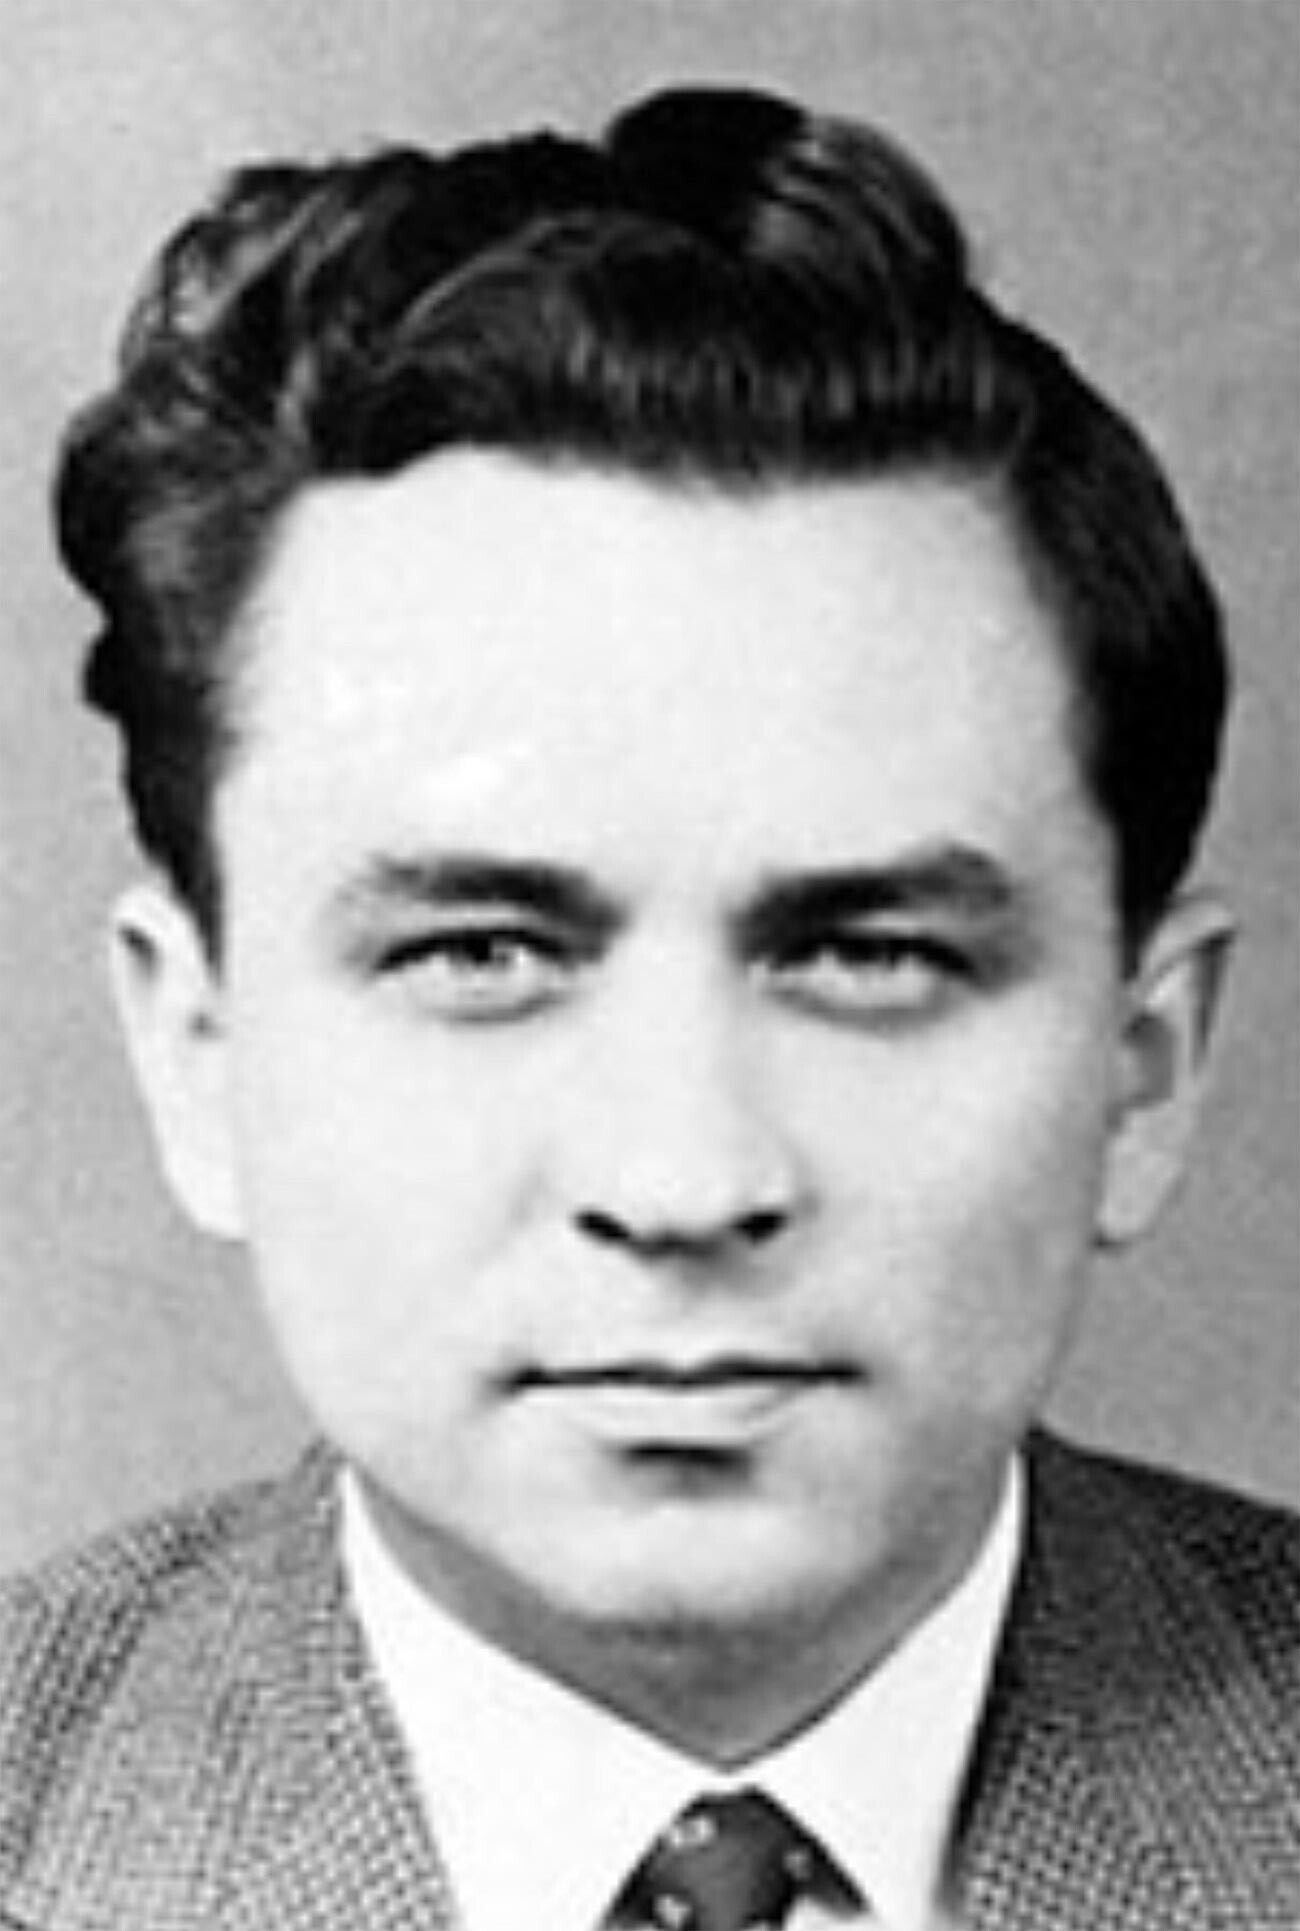 Molodi (1922-1970), oficial de inteligencia soviético.
